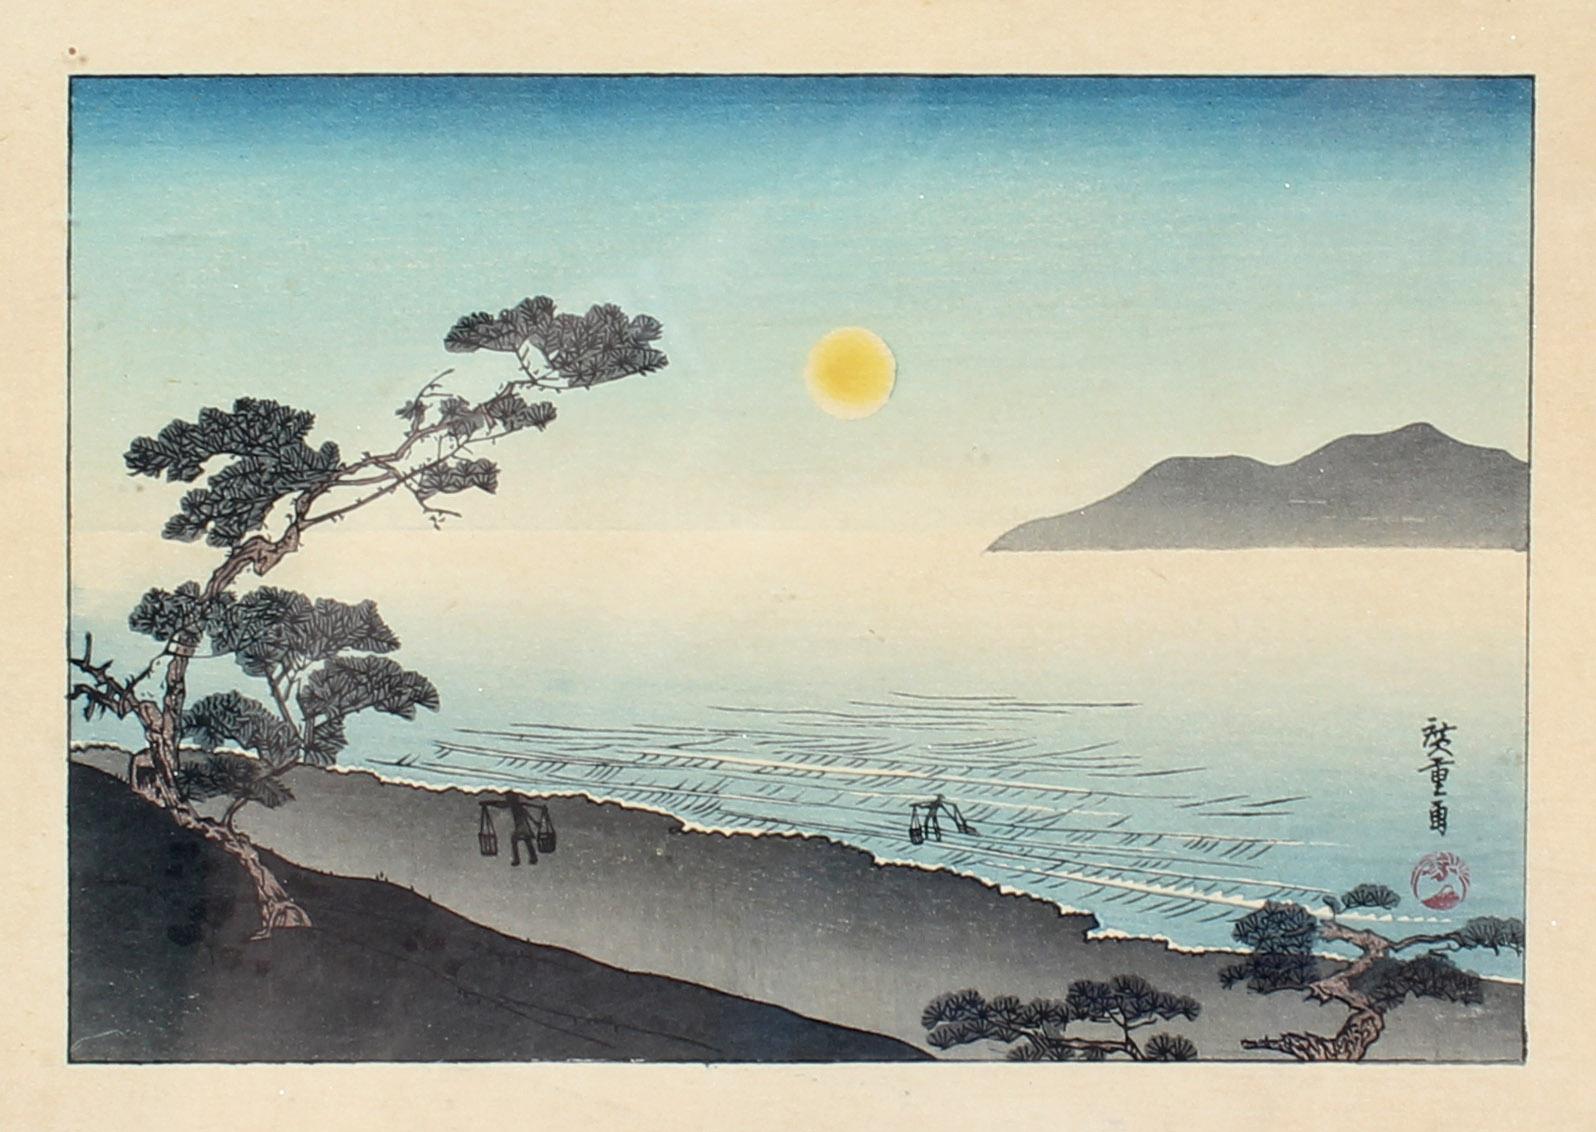 Japanese Woodblock Hiroshige Suma Beach at night 1840 Framed original Rare  - Print by Utagawa Hiroshige (Ando Hiroshige)